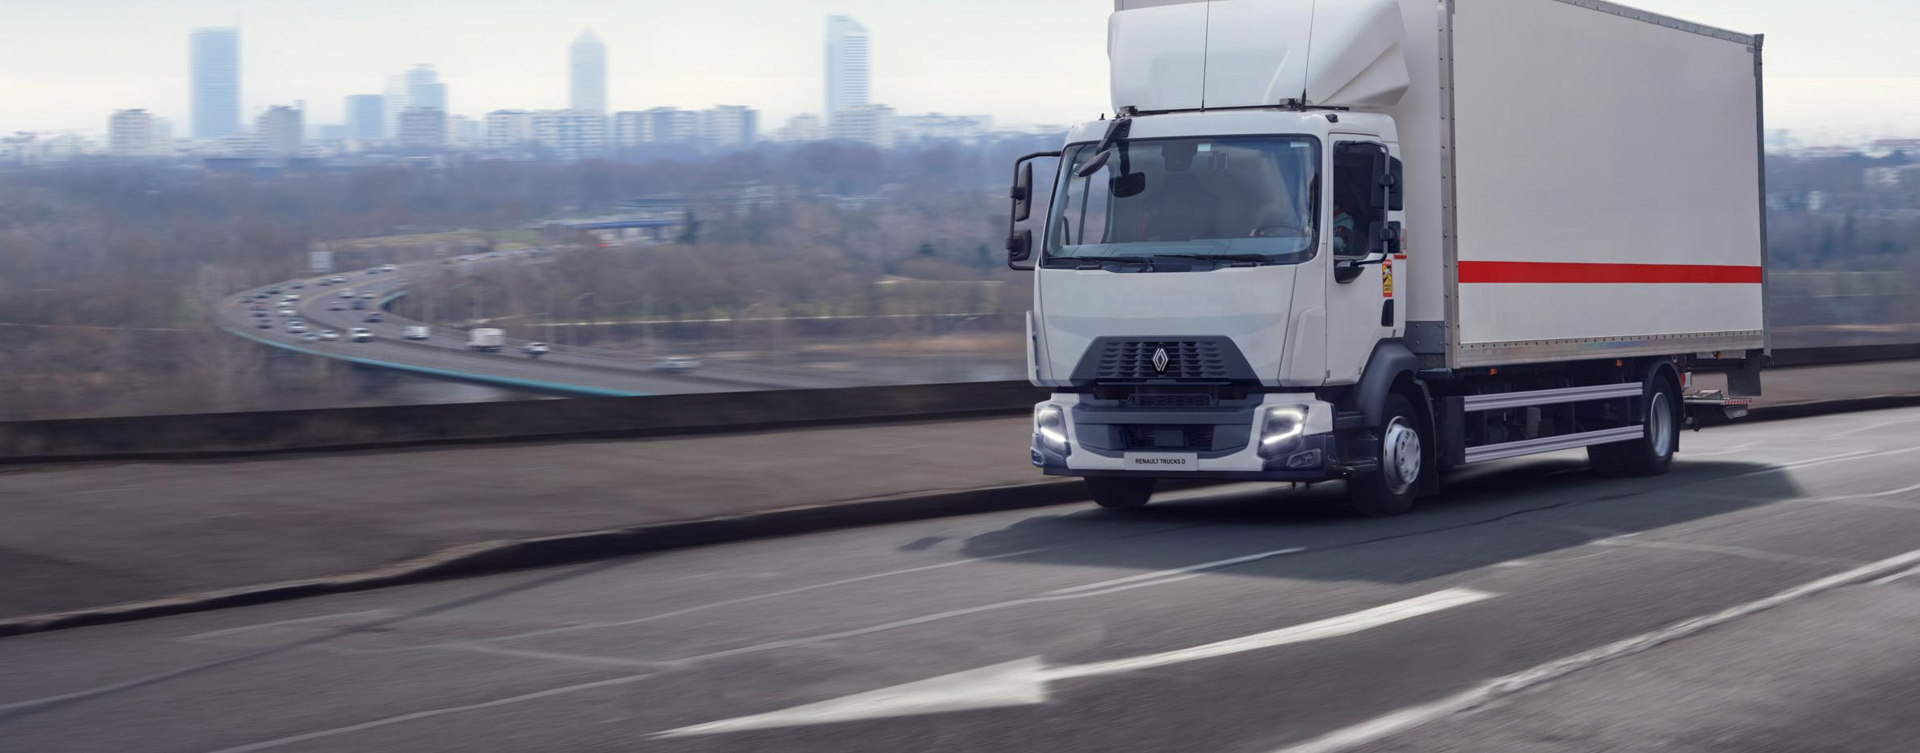 Renault-Trucks-D-Wide-highway